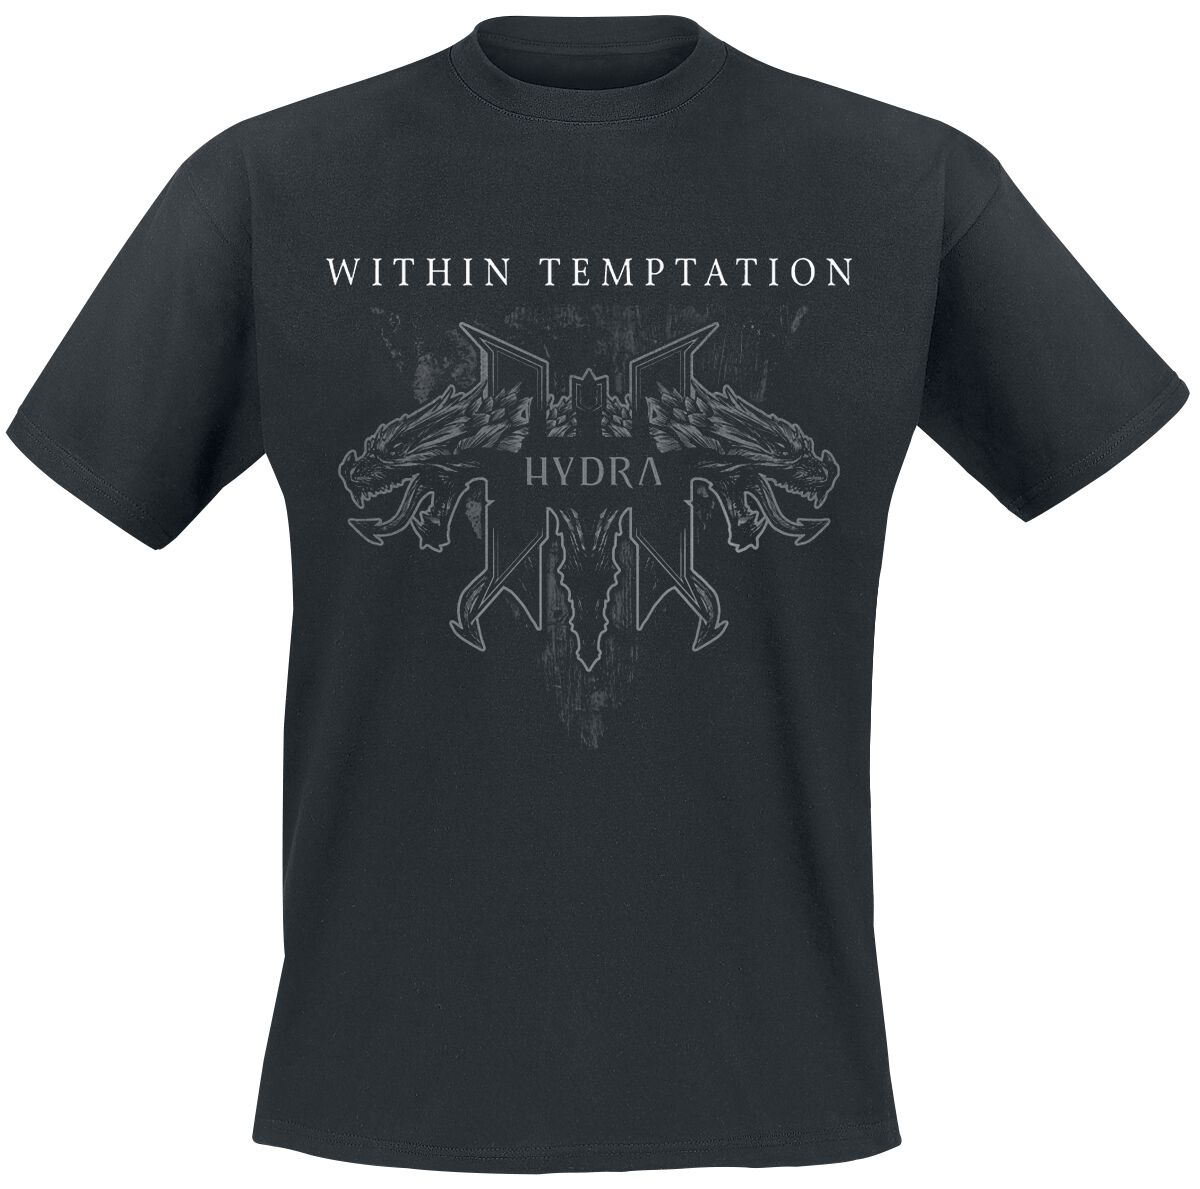 Within Temptation T-Shirt - Hydra Tracks - S bis XXL - für Männer - Größe XL - schwarz  - Lizenziertes Merchandise!